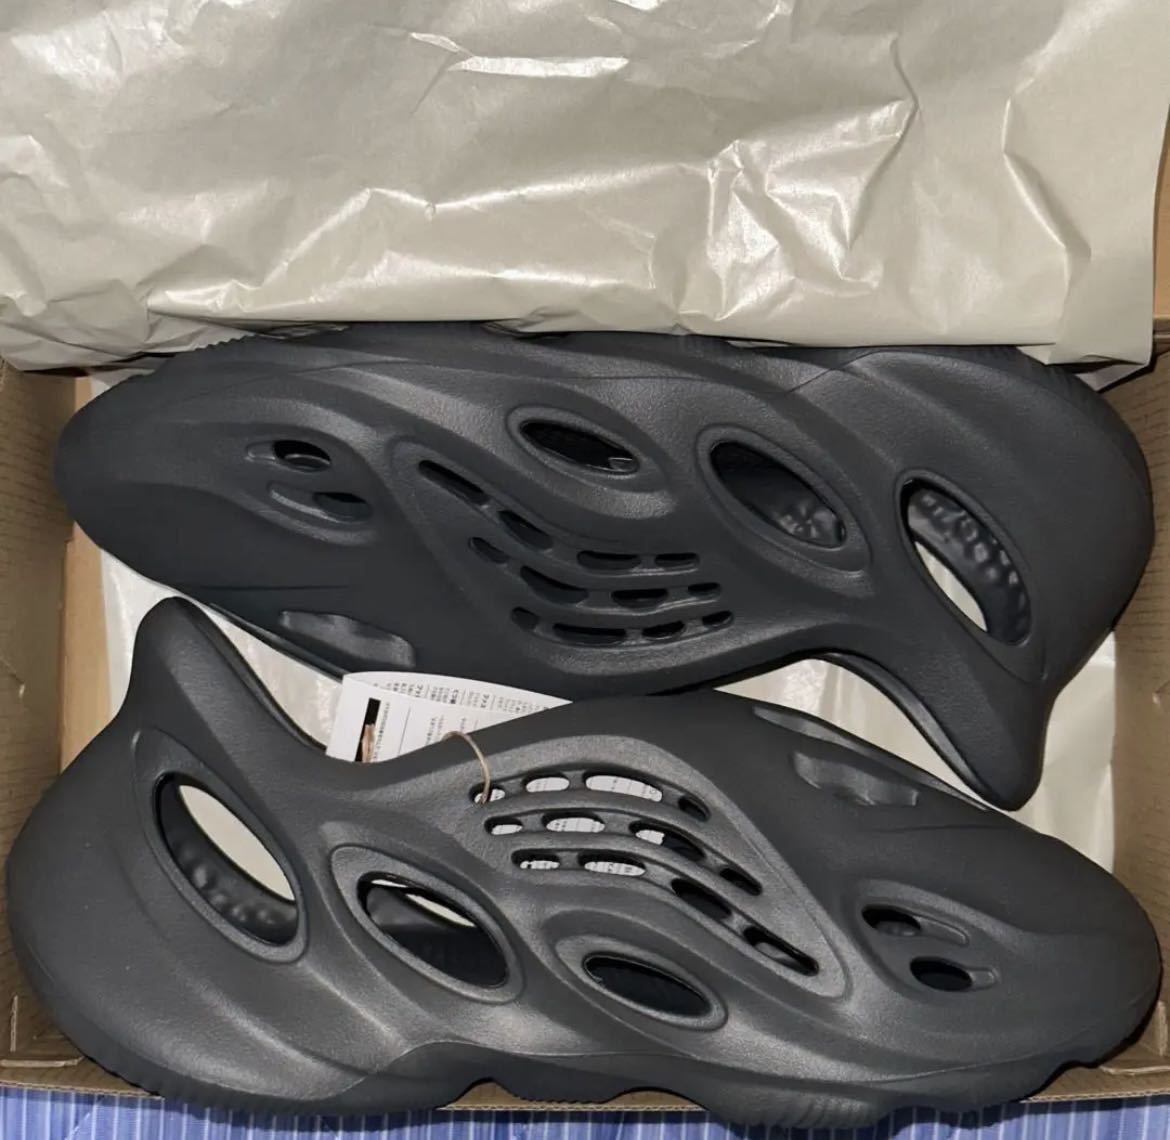 adidas Yeezy Foam Runner “CARBON” rnr イージー フォームランナー カーボン IG5349 27.5cm 新品 未使用 即納 当選品_画像3